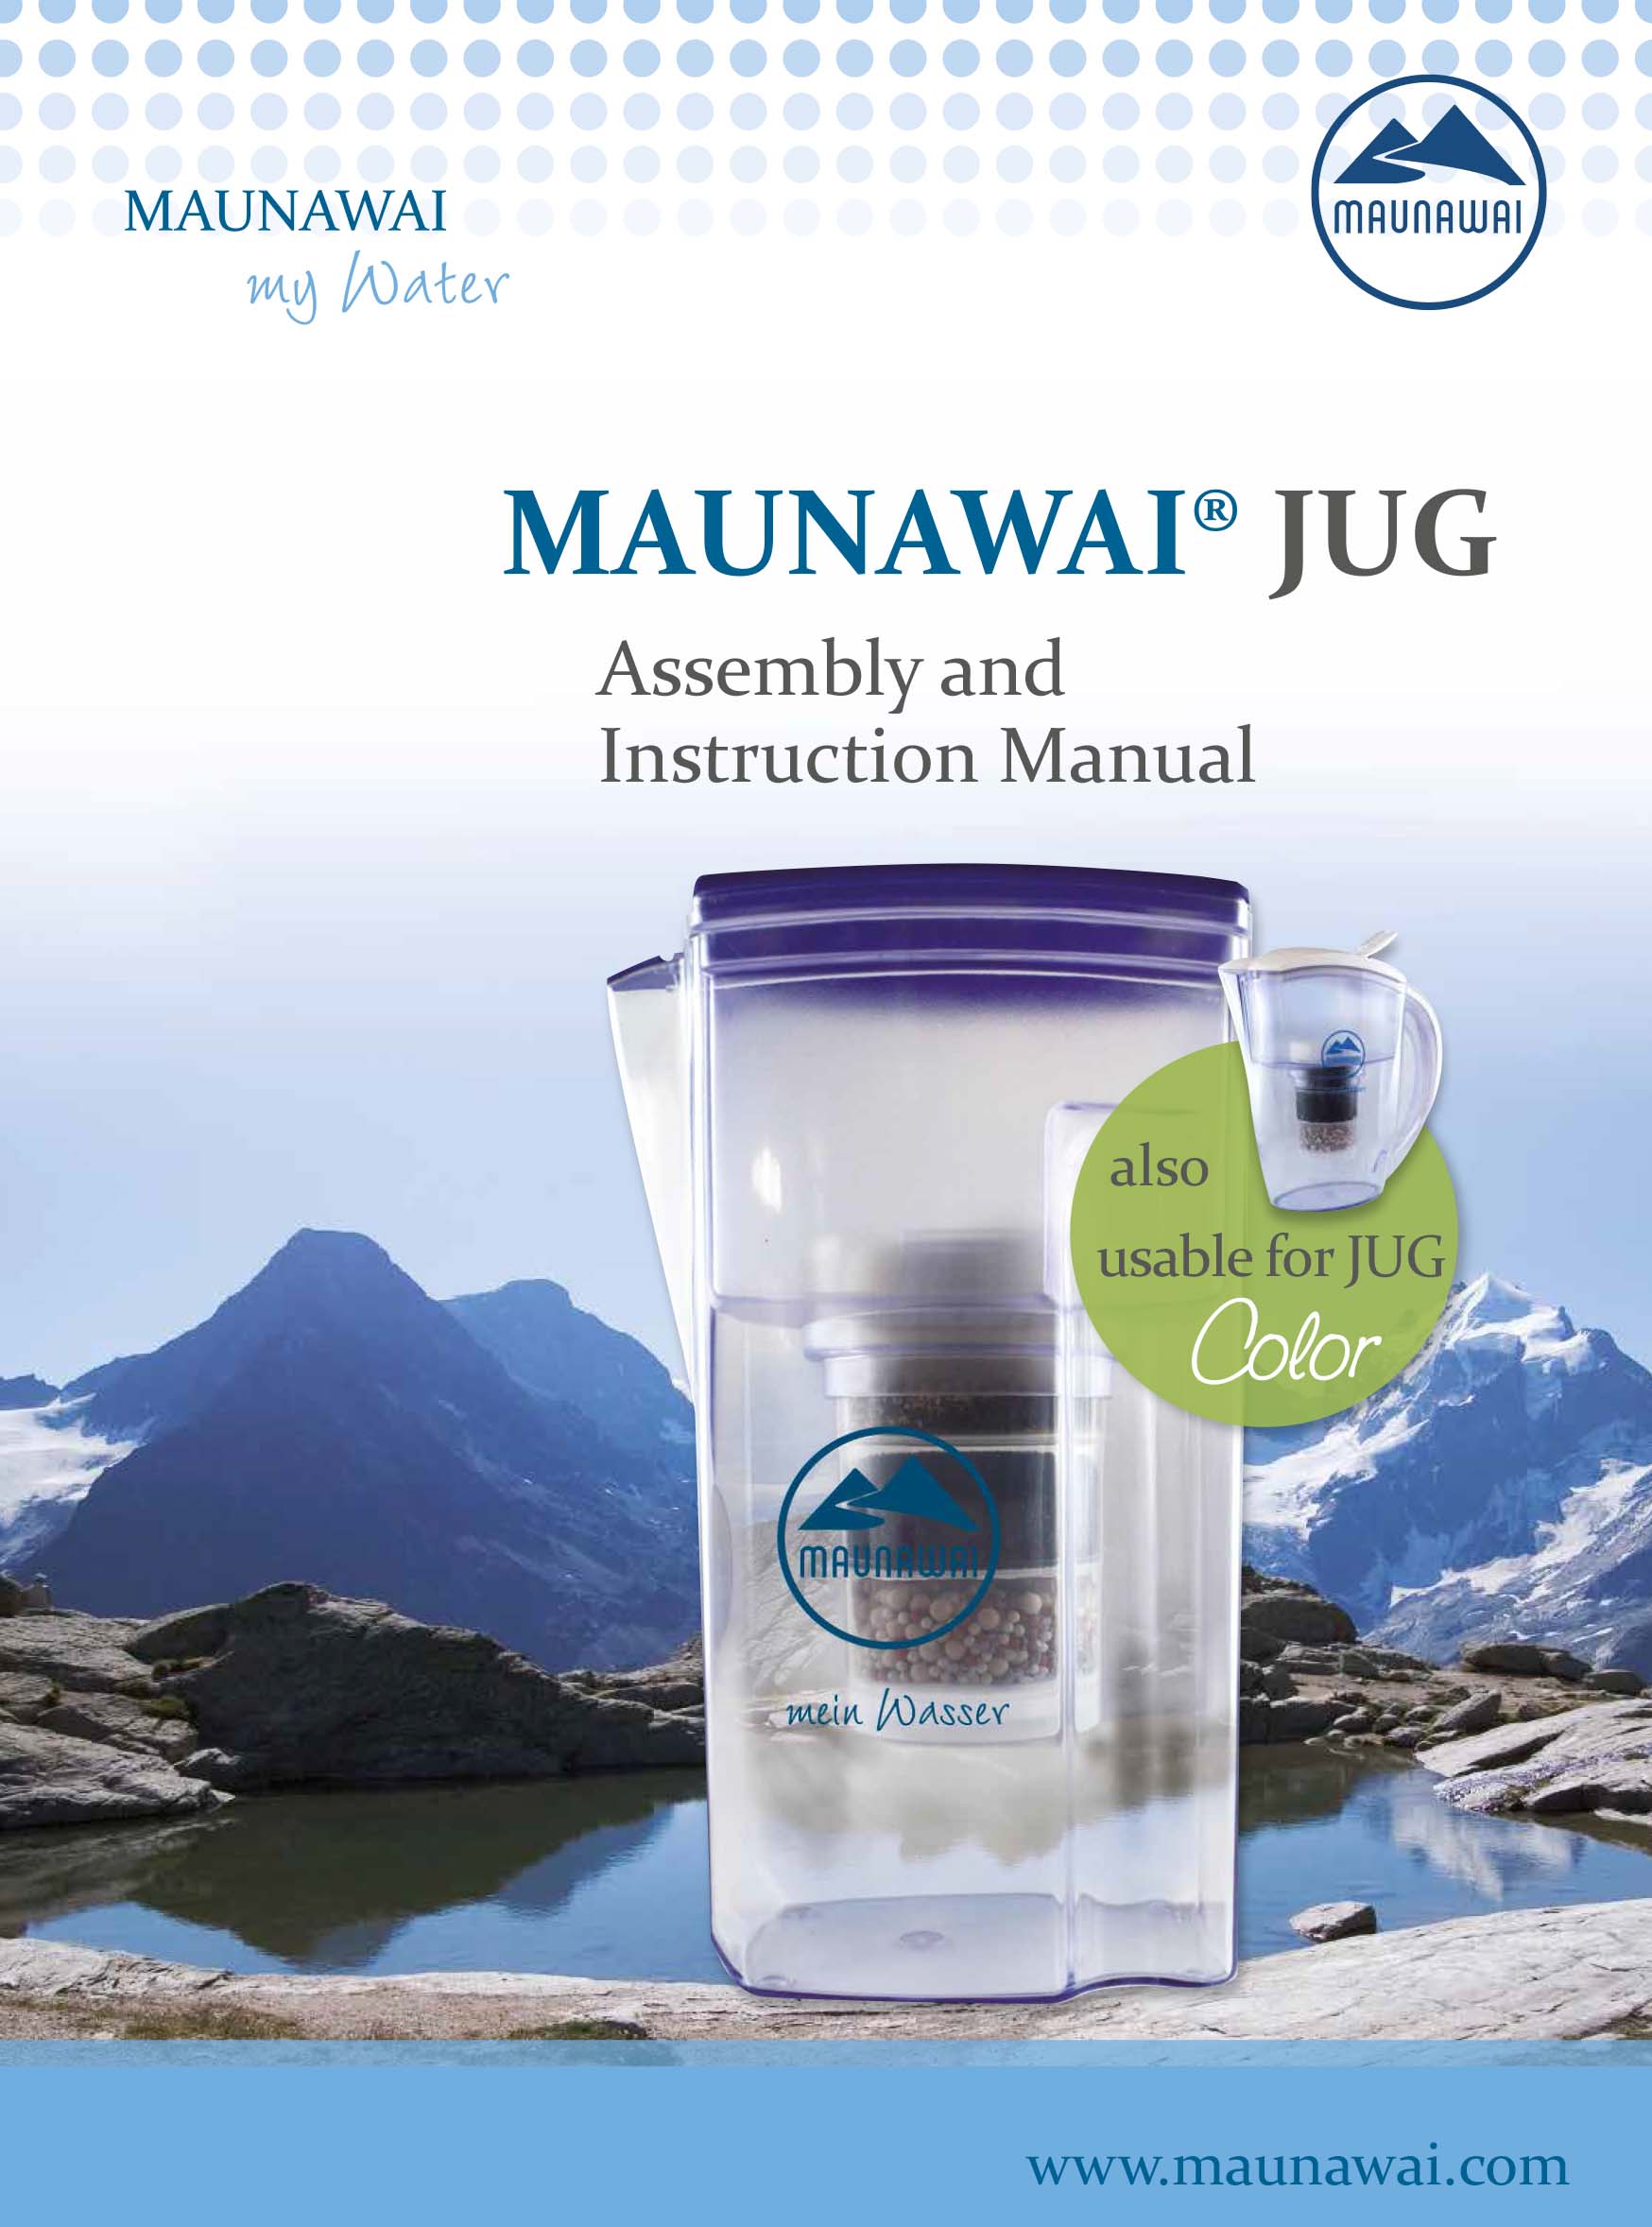 MAUNAWAI-Jug-Assembly-and-Instruction-Manual-1.jpg